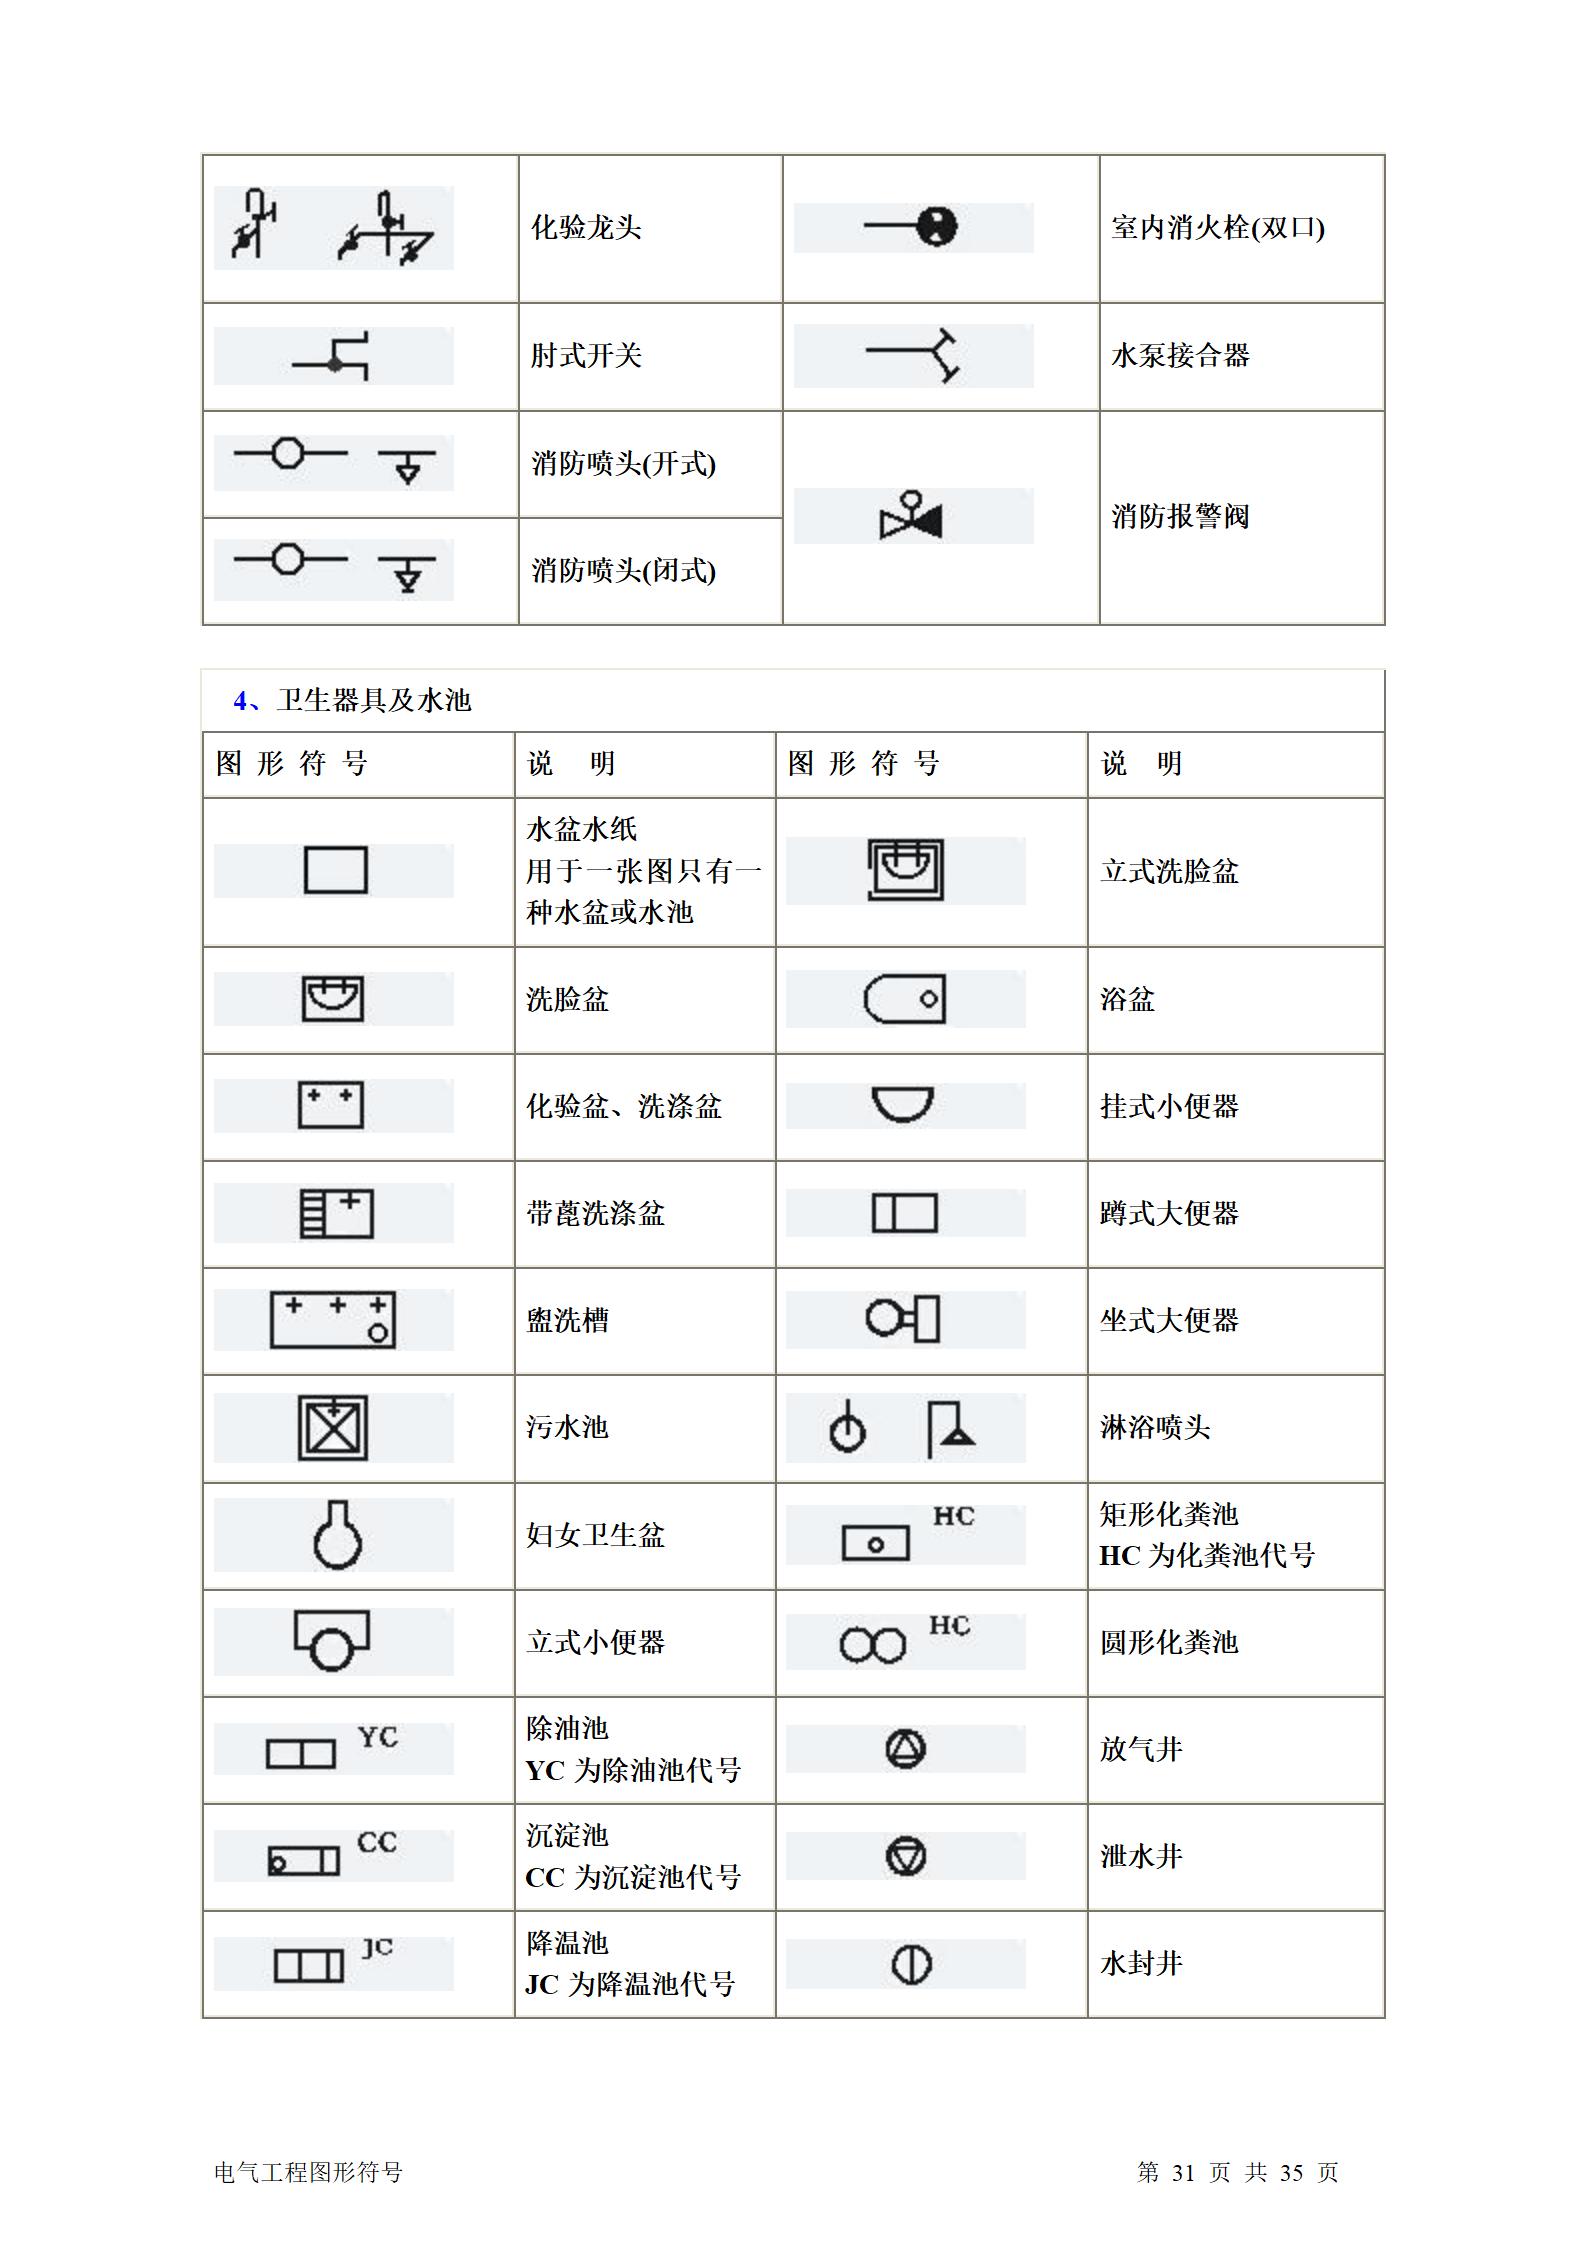 建筑电气、水暖、通风工程图形符号大全word版插图(31)